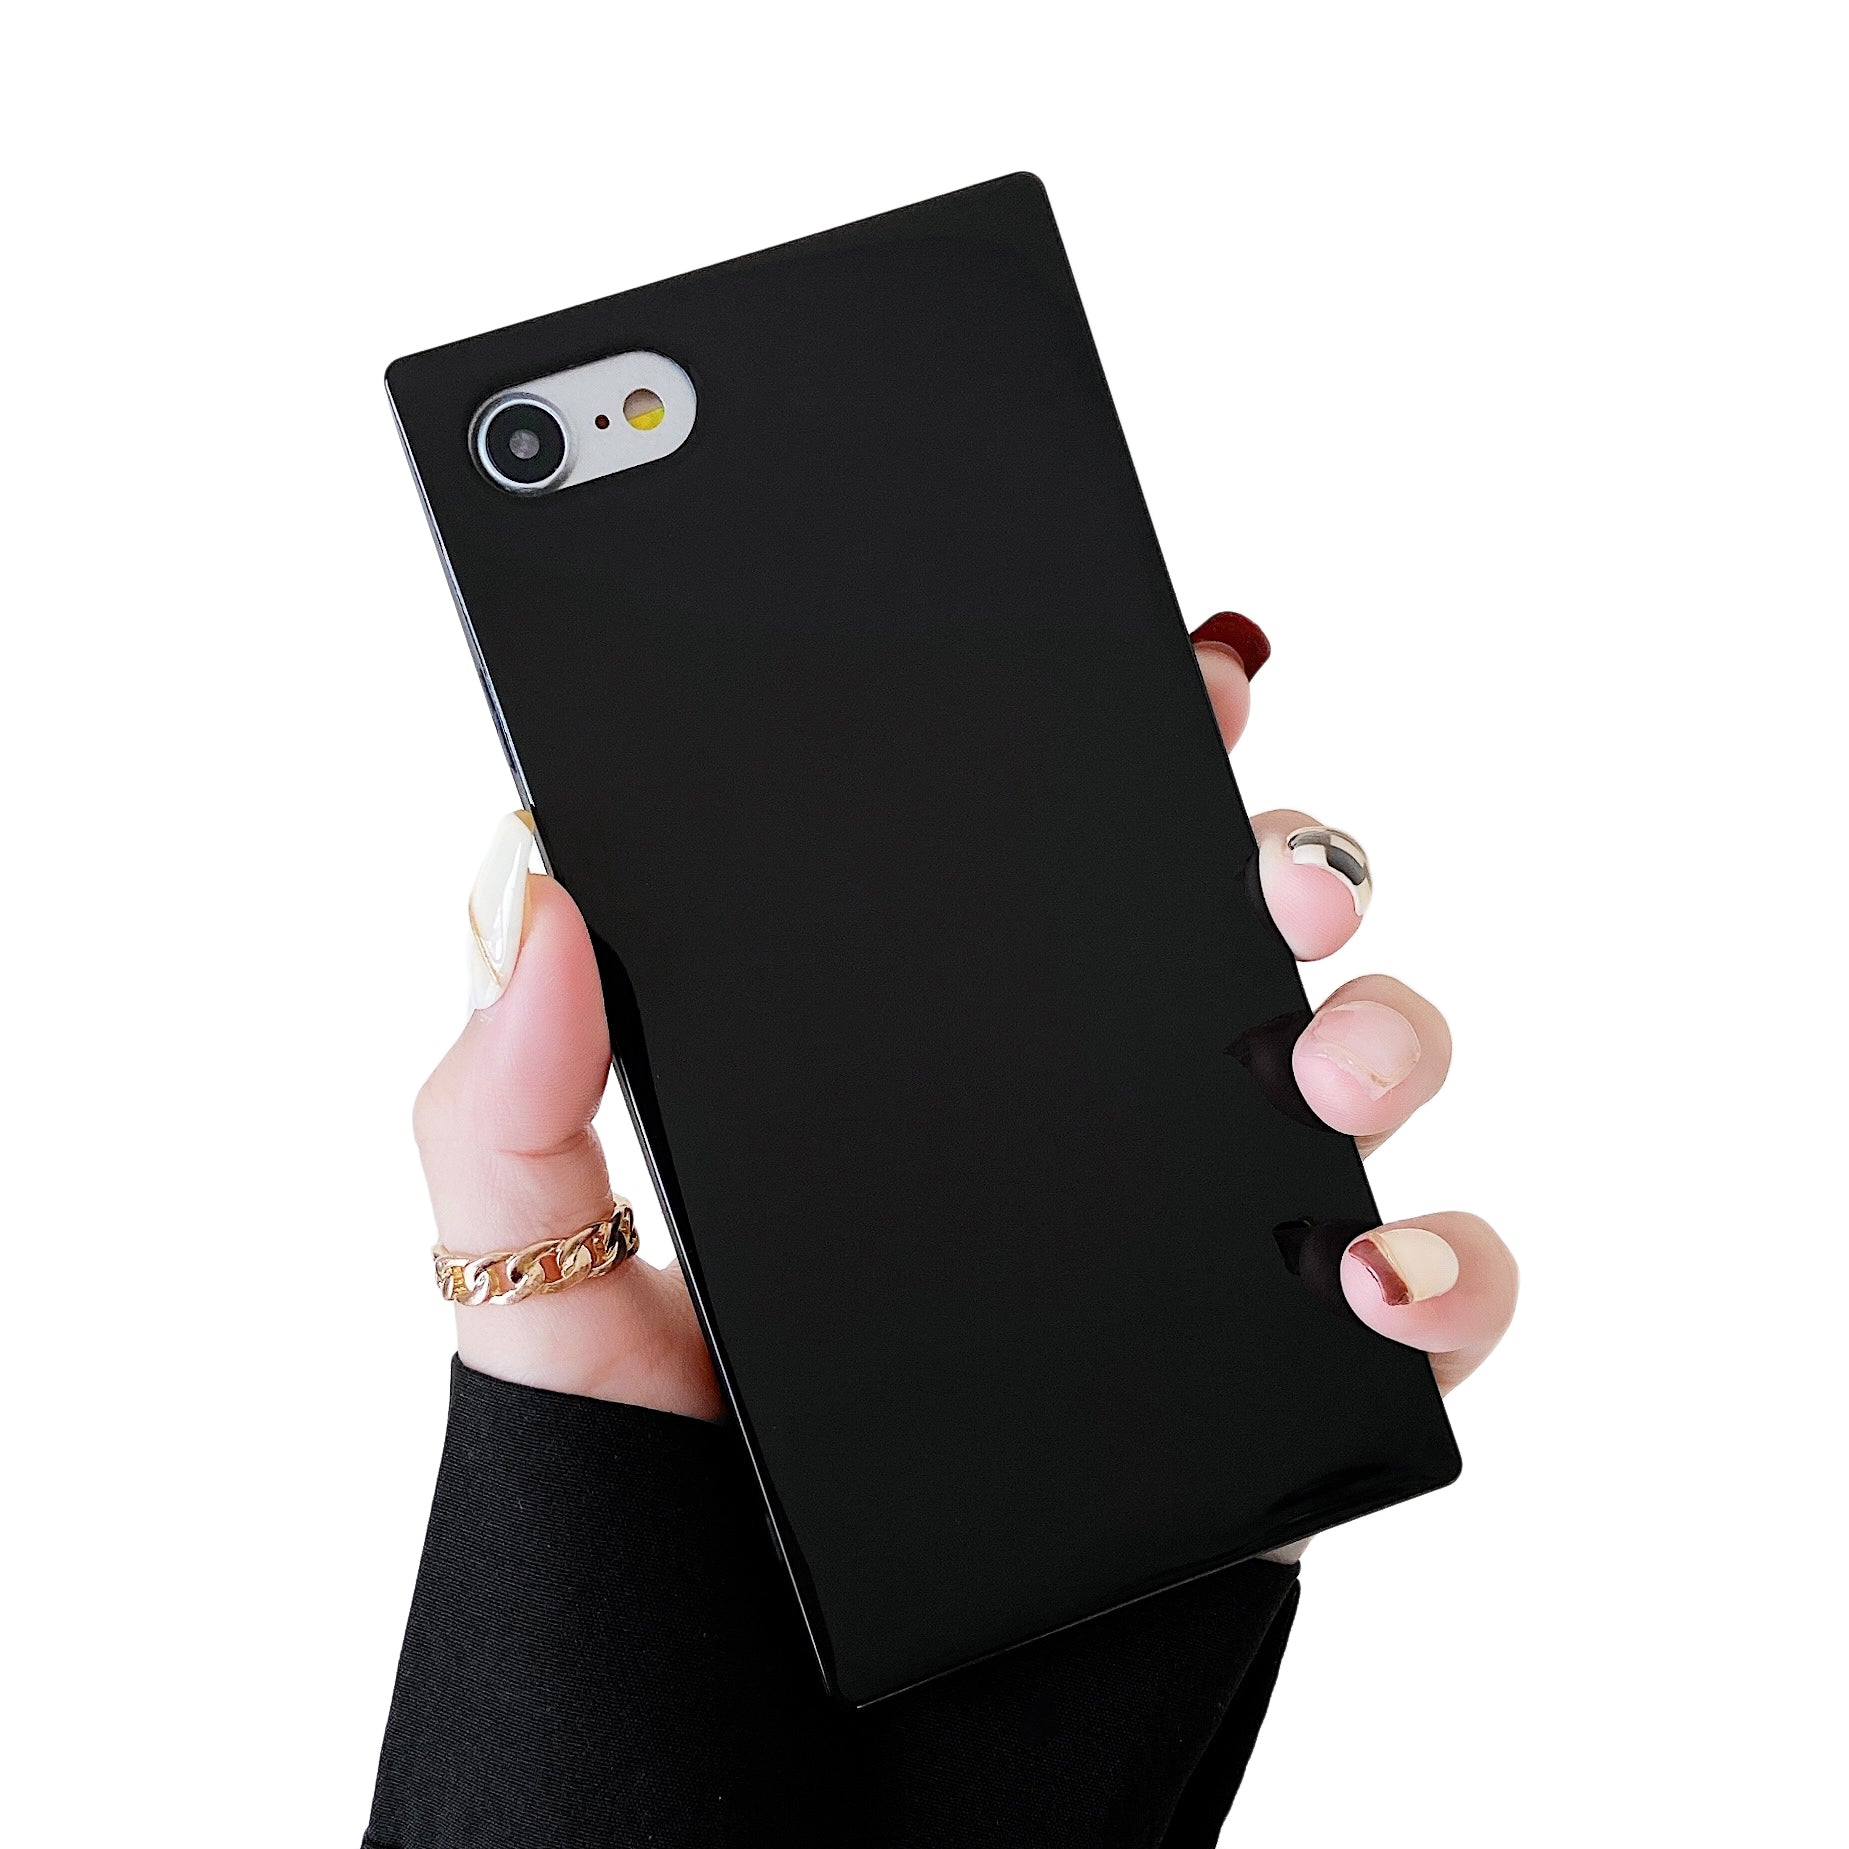 iPhone 8 Plus/7 Plus Case Square Neutral Plain Color (Black)